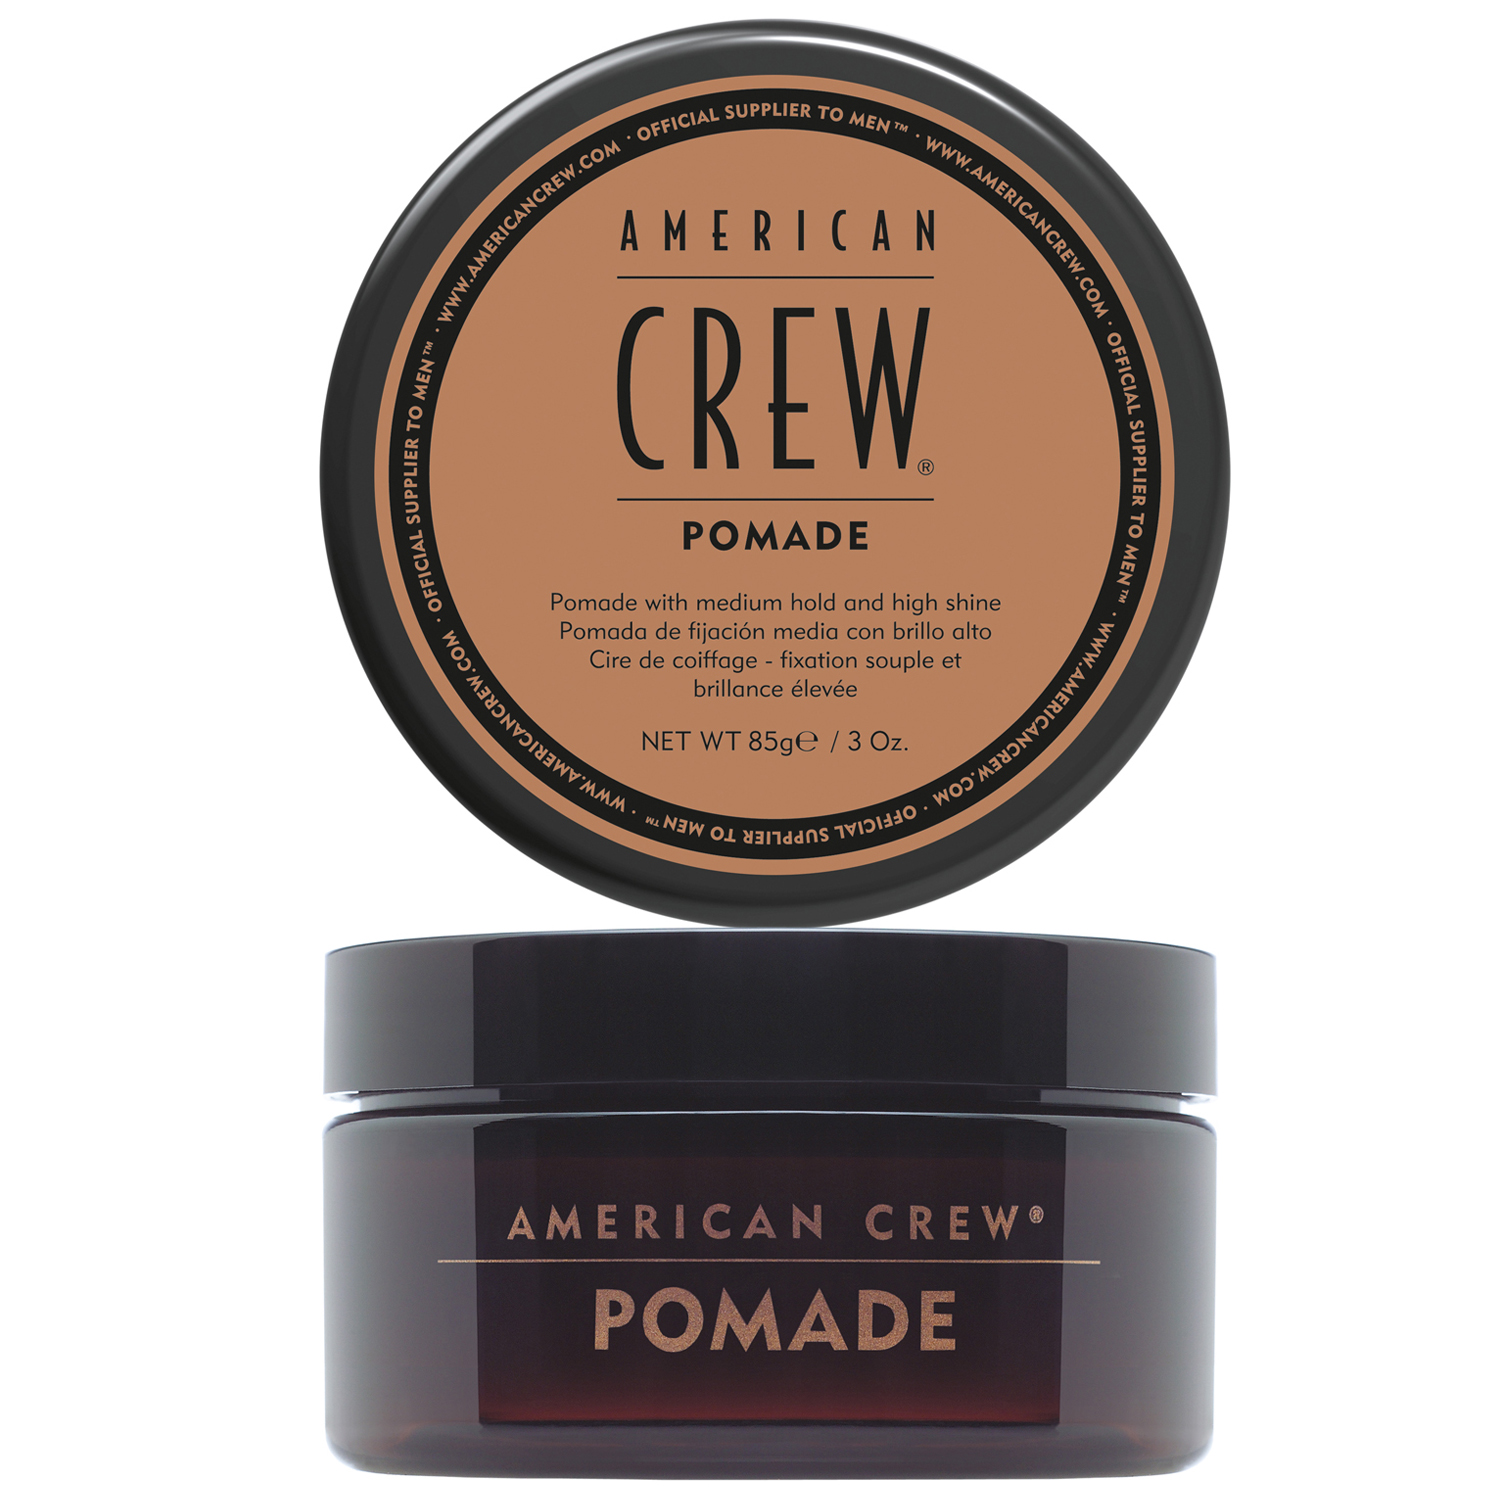 American Crew Помада для укладки волос средней фиксации Pomade, 85 мл (American Crew, Styling) уход за волосами american crew помада для укладки волос средняя фиксация и средний уровень блеска pomade